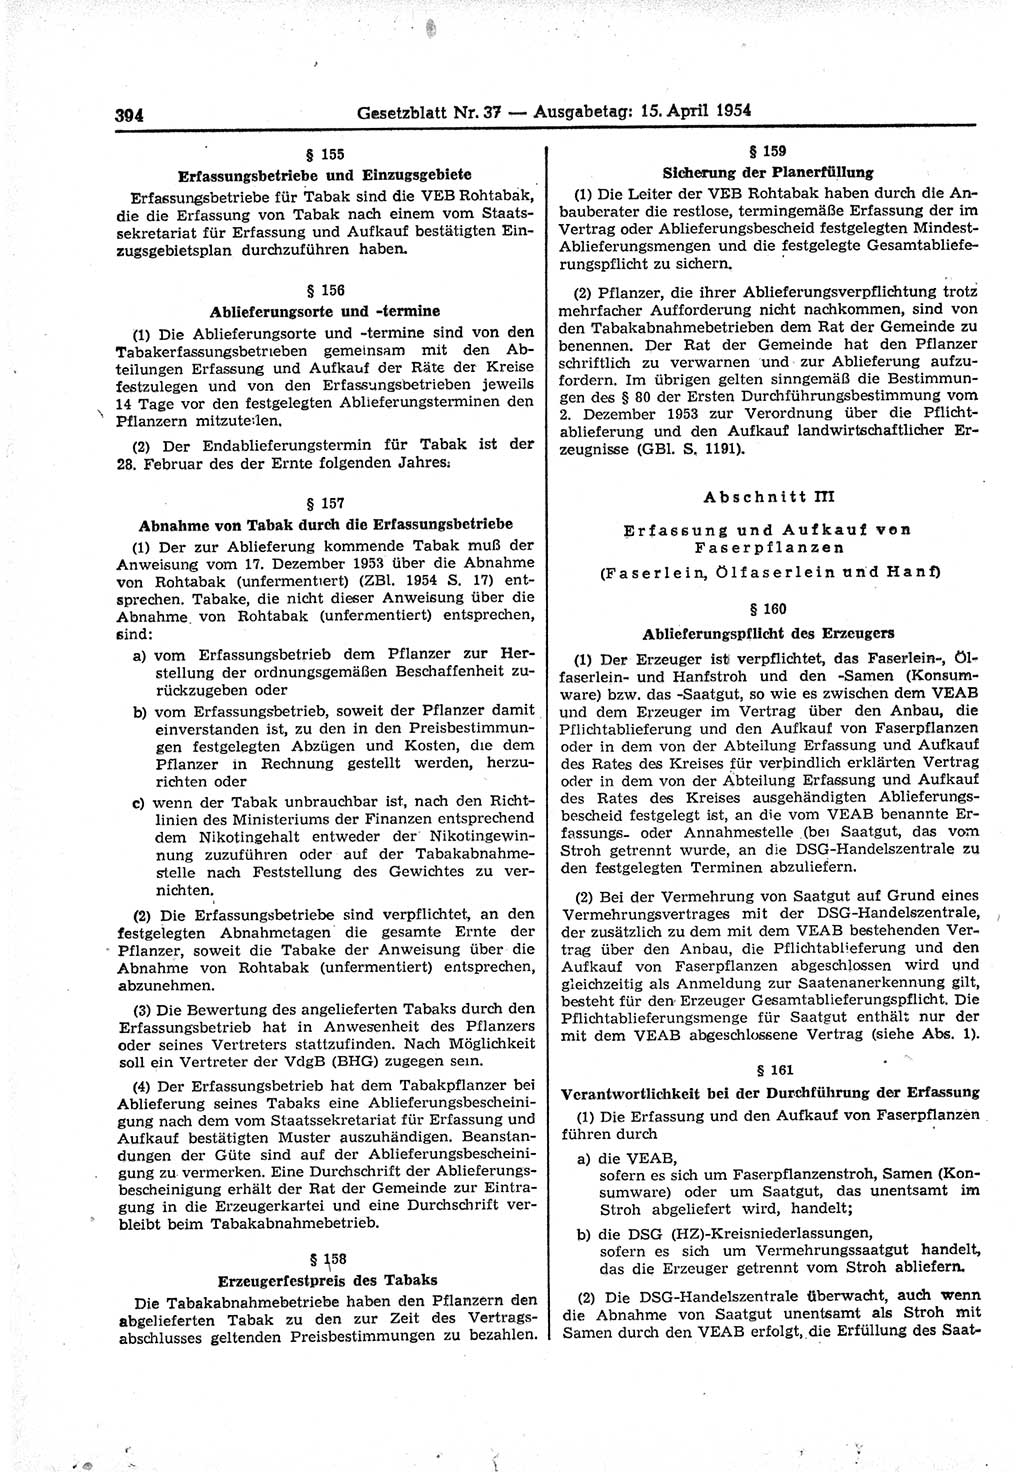 Gesetzblatt (GBl.) der Deutschen Demokratischen Republik (DDR) 1954, Seite 394 (GBl. DDR 1954, S. 394)